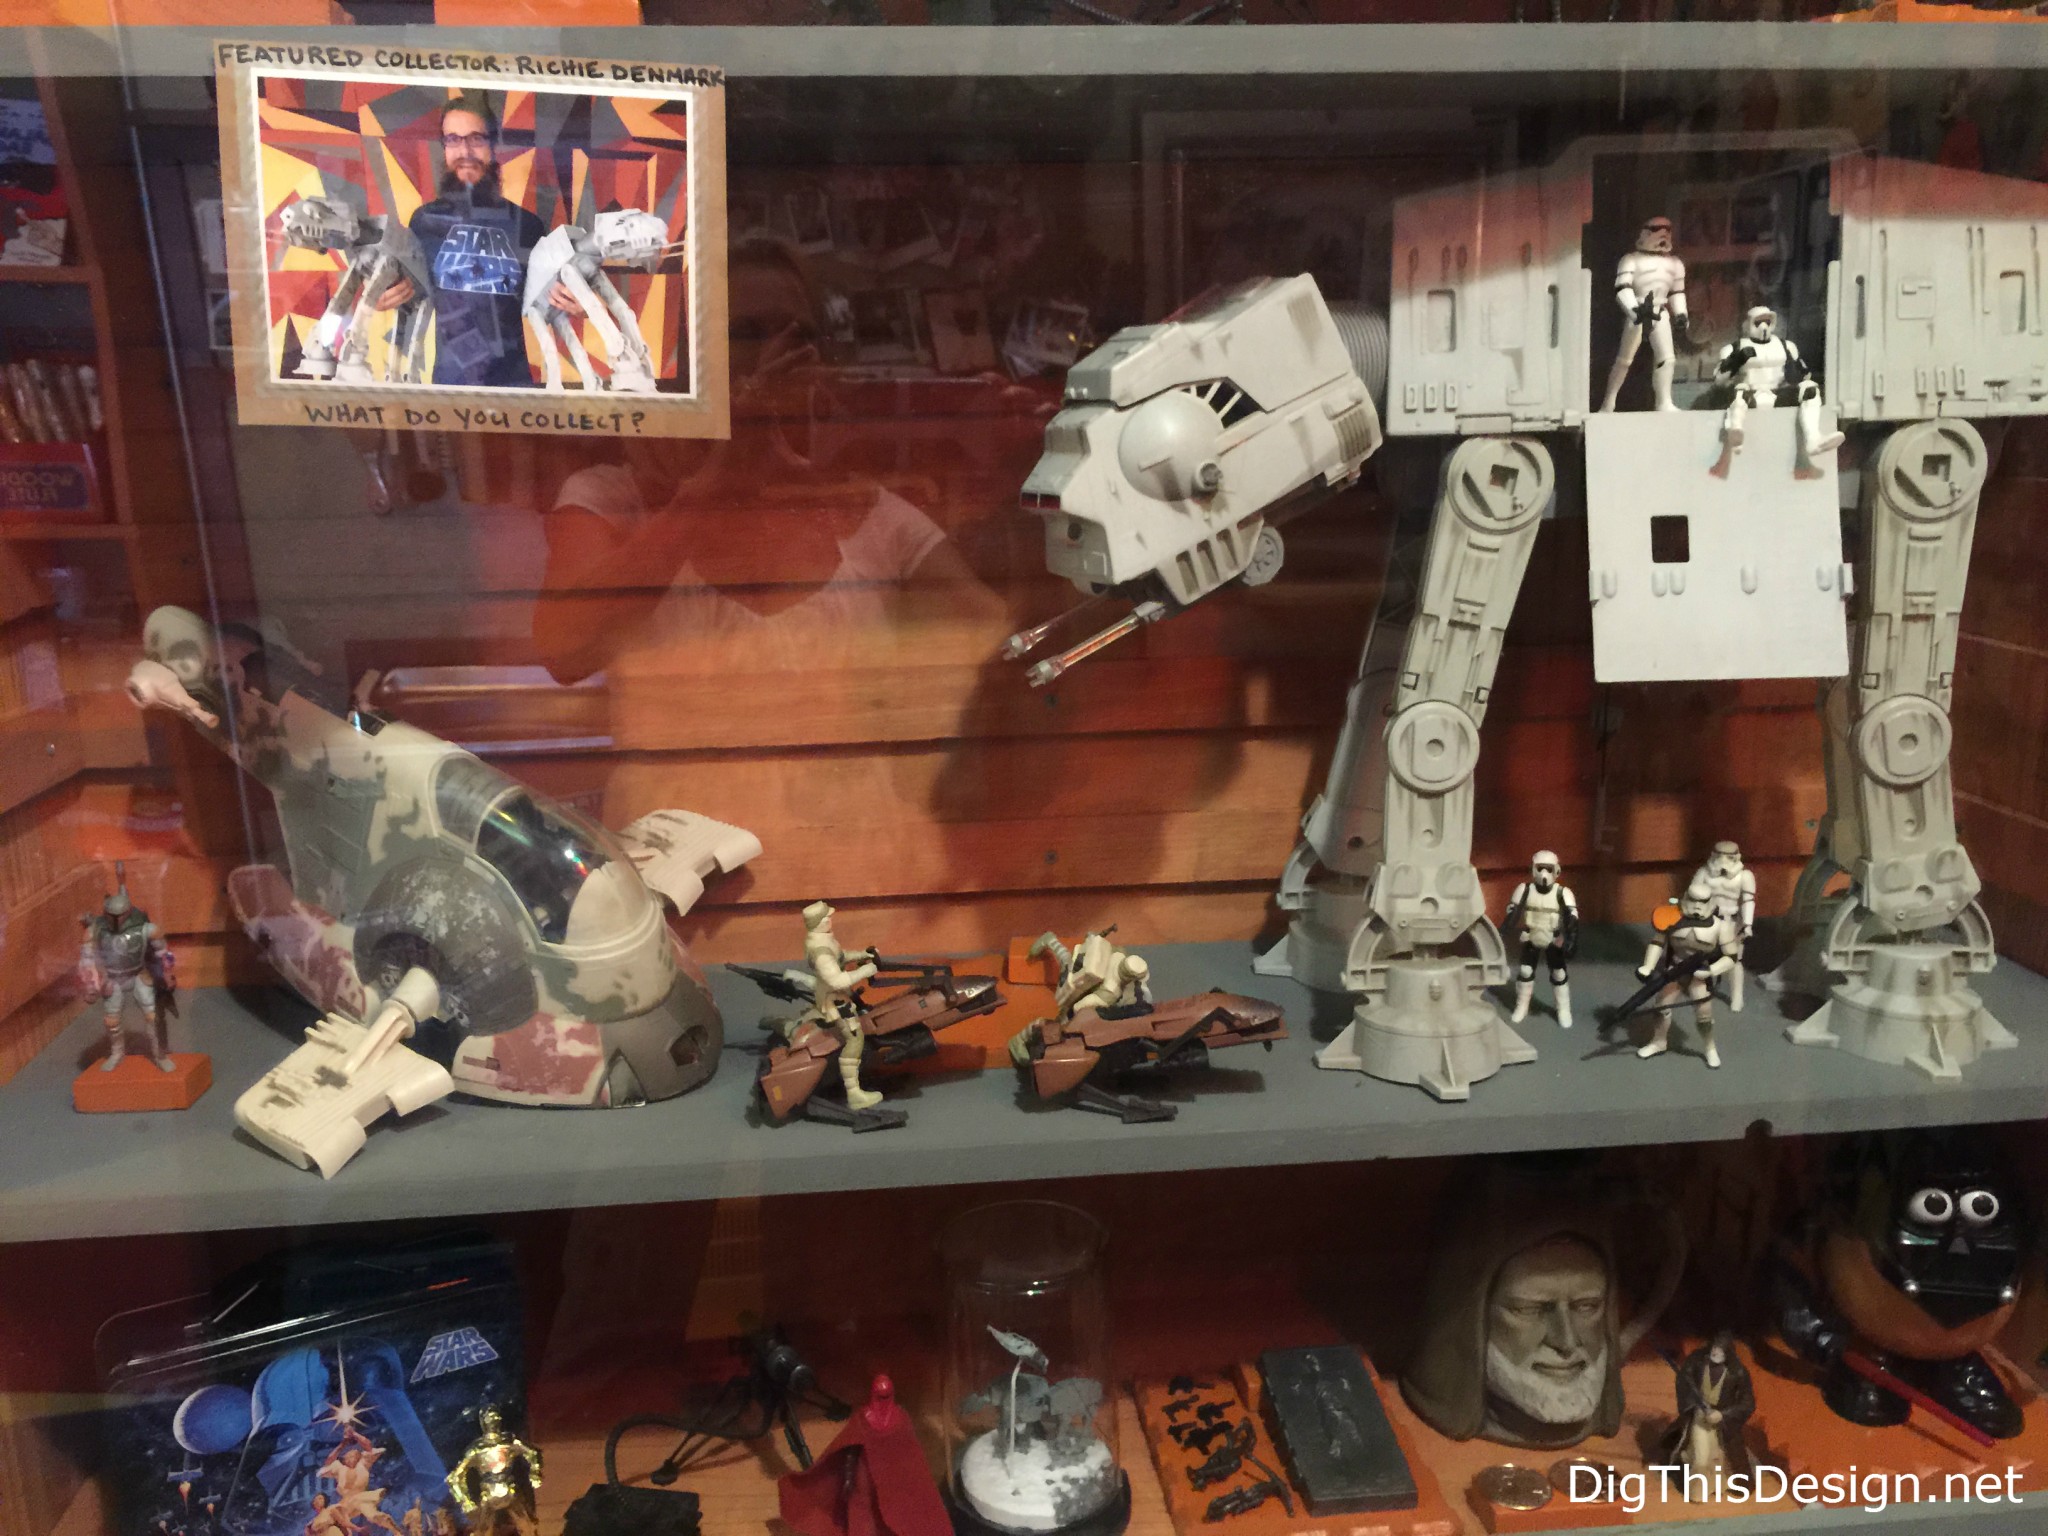 Satchel's collection of Star Wars memorabilia 